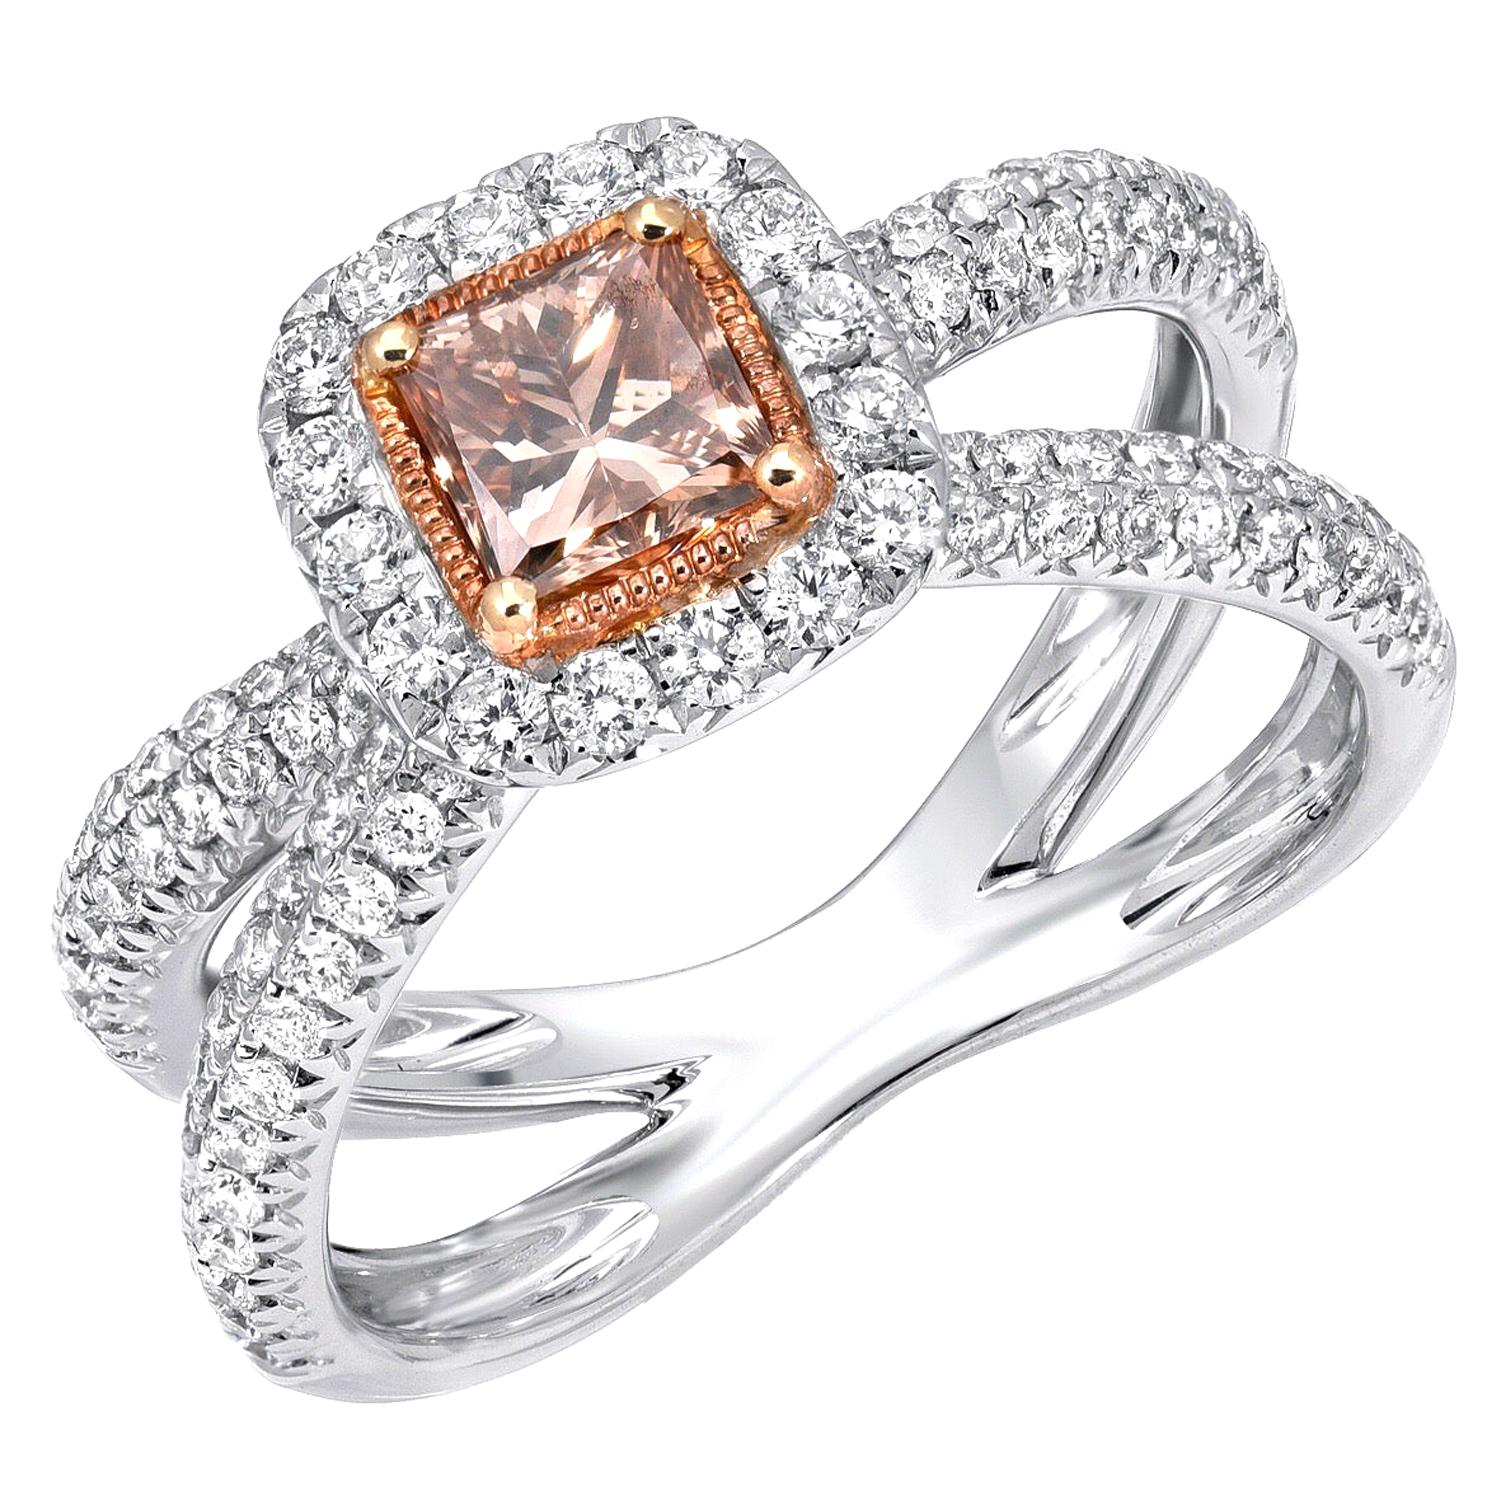 Orange Brown Diamond Ring Princess Cut 0.58 Carat GIA Certified